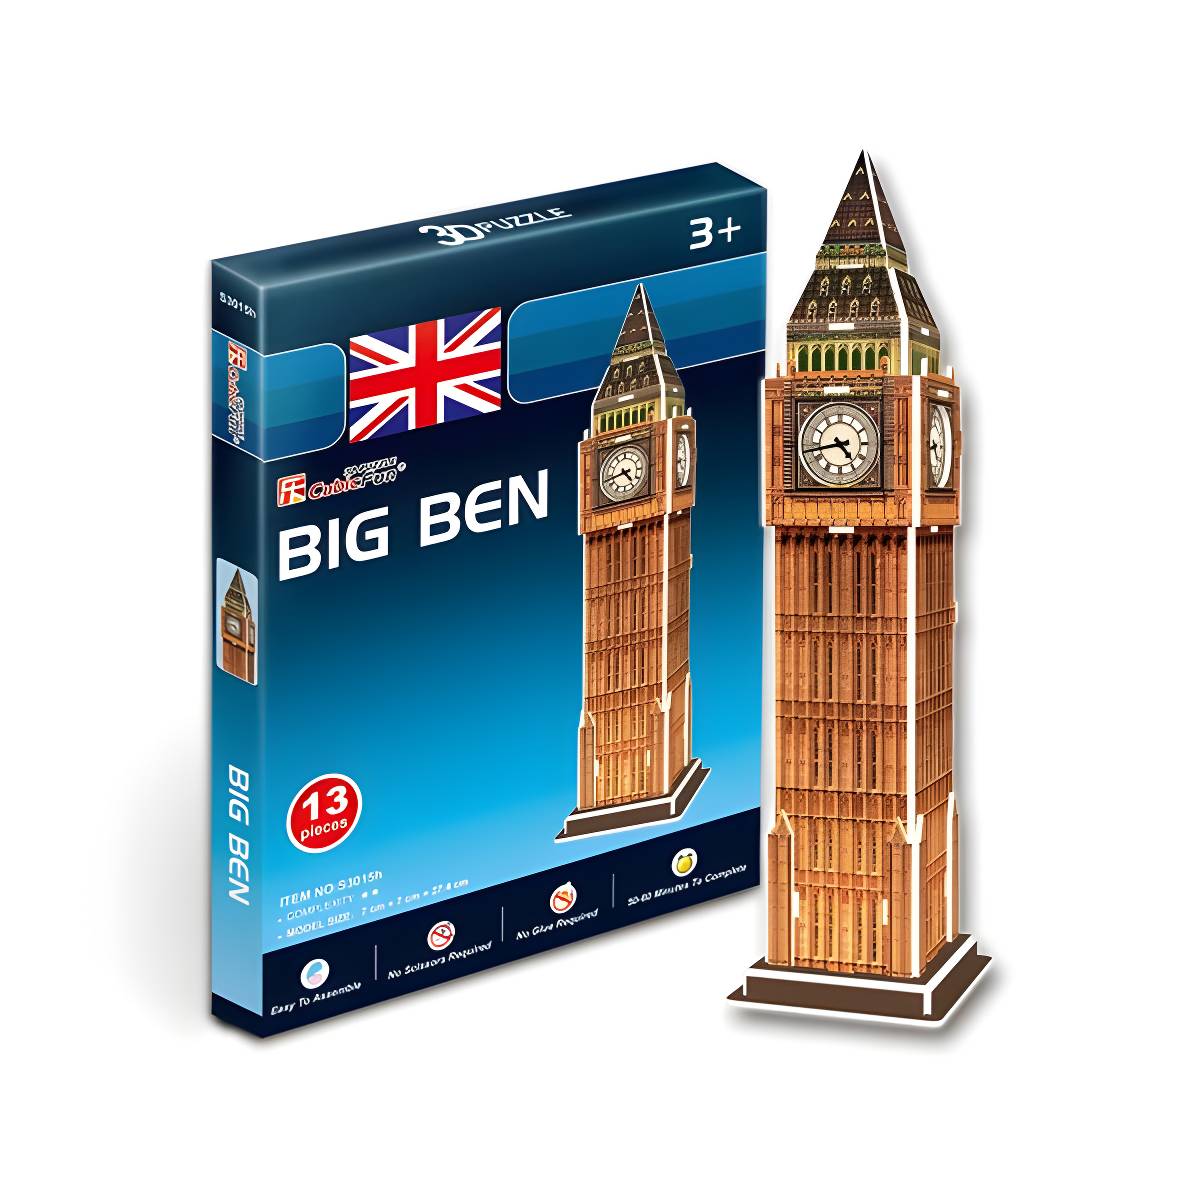 3D Puzzle - Big Ben 13pcs